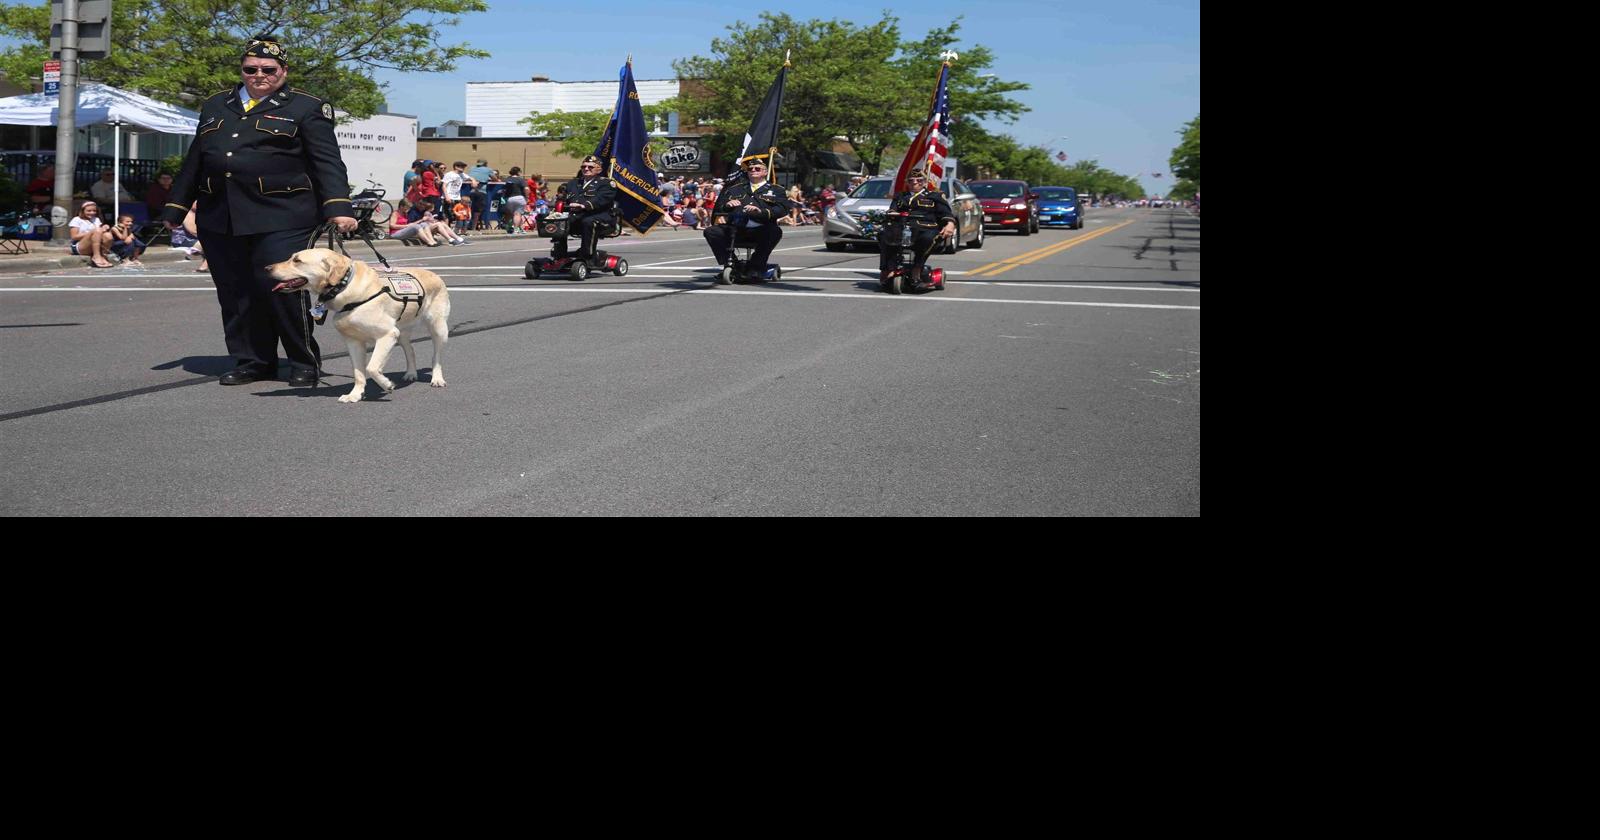 Memorial Day Parade in Kenmore